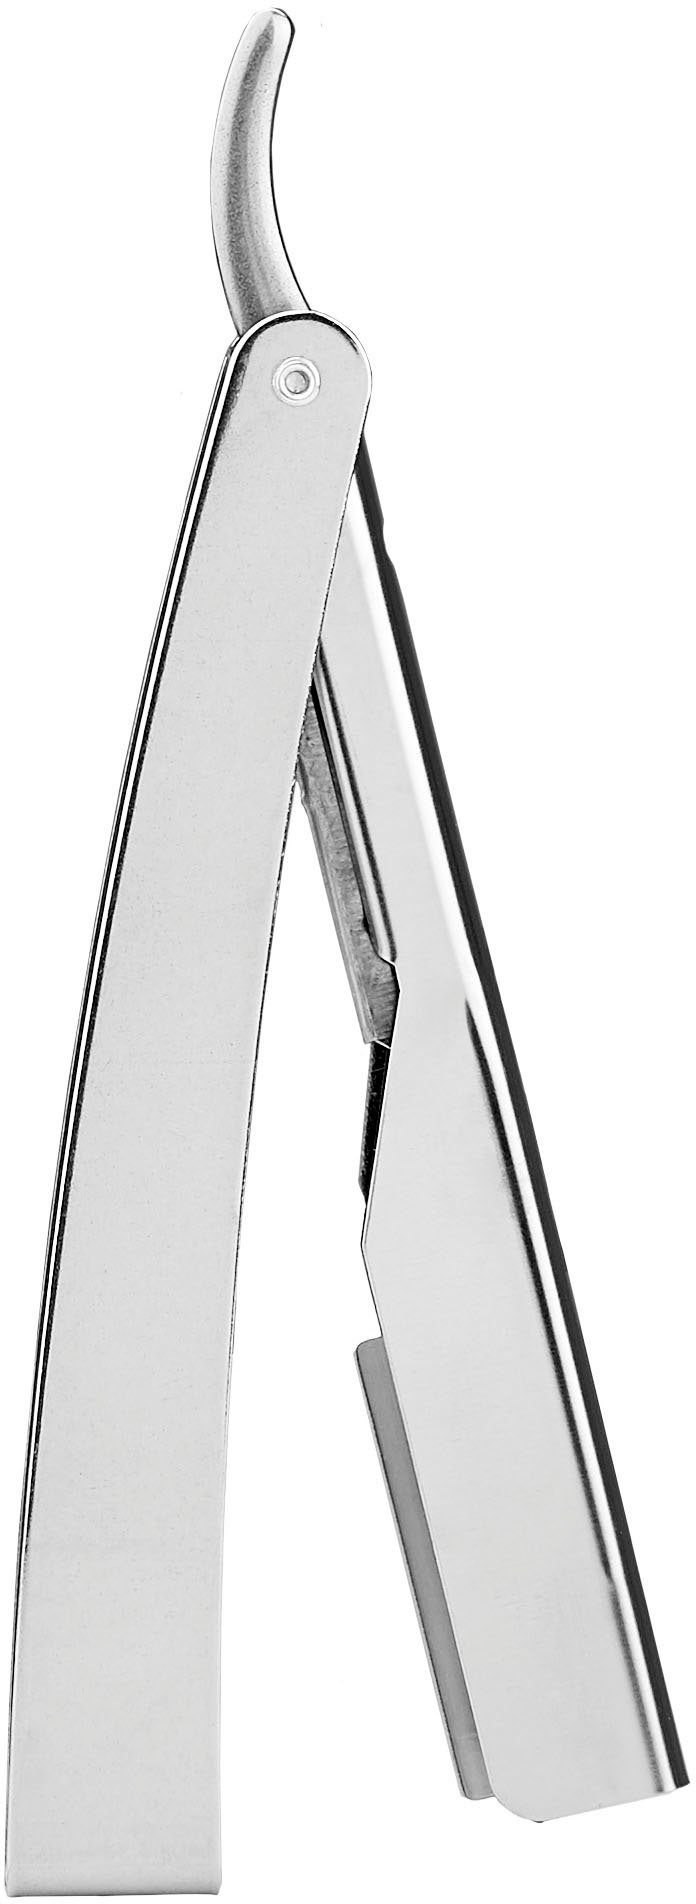 FRIPAC 1955 Rasiermesser silberfarben, Rasiermesser mit praktischem Klappgriff | Rasiermesser